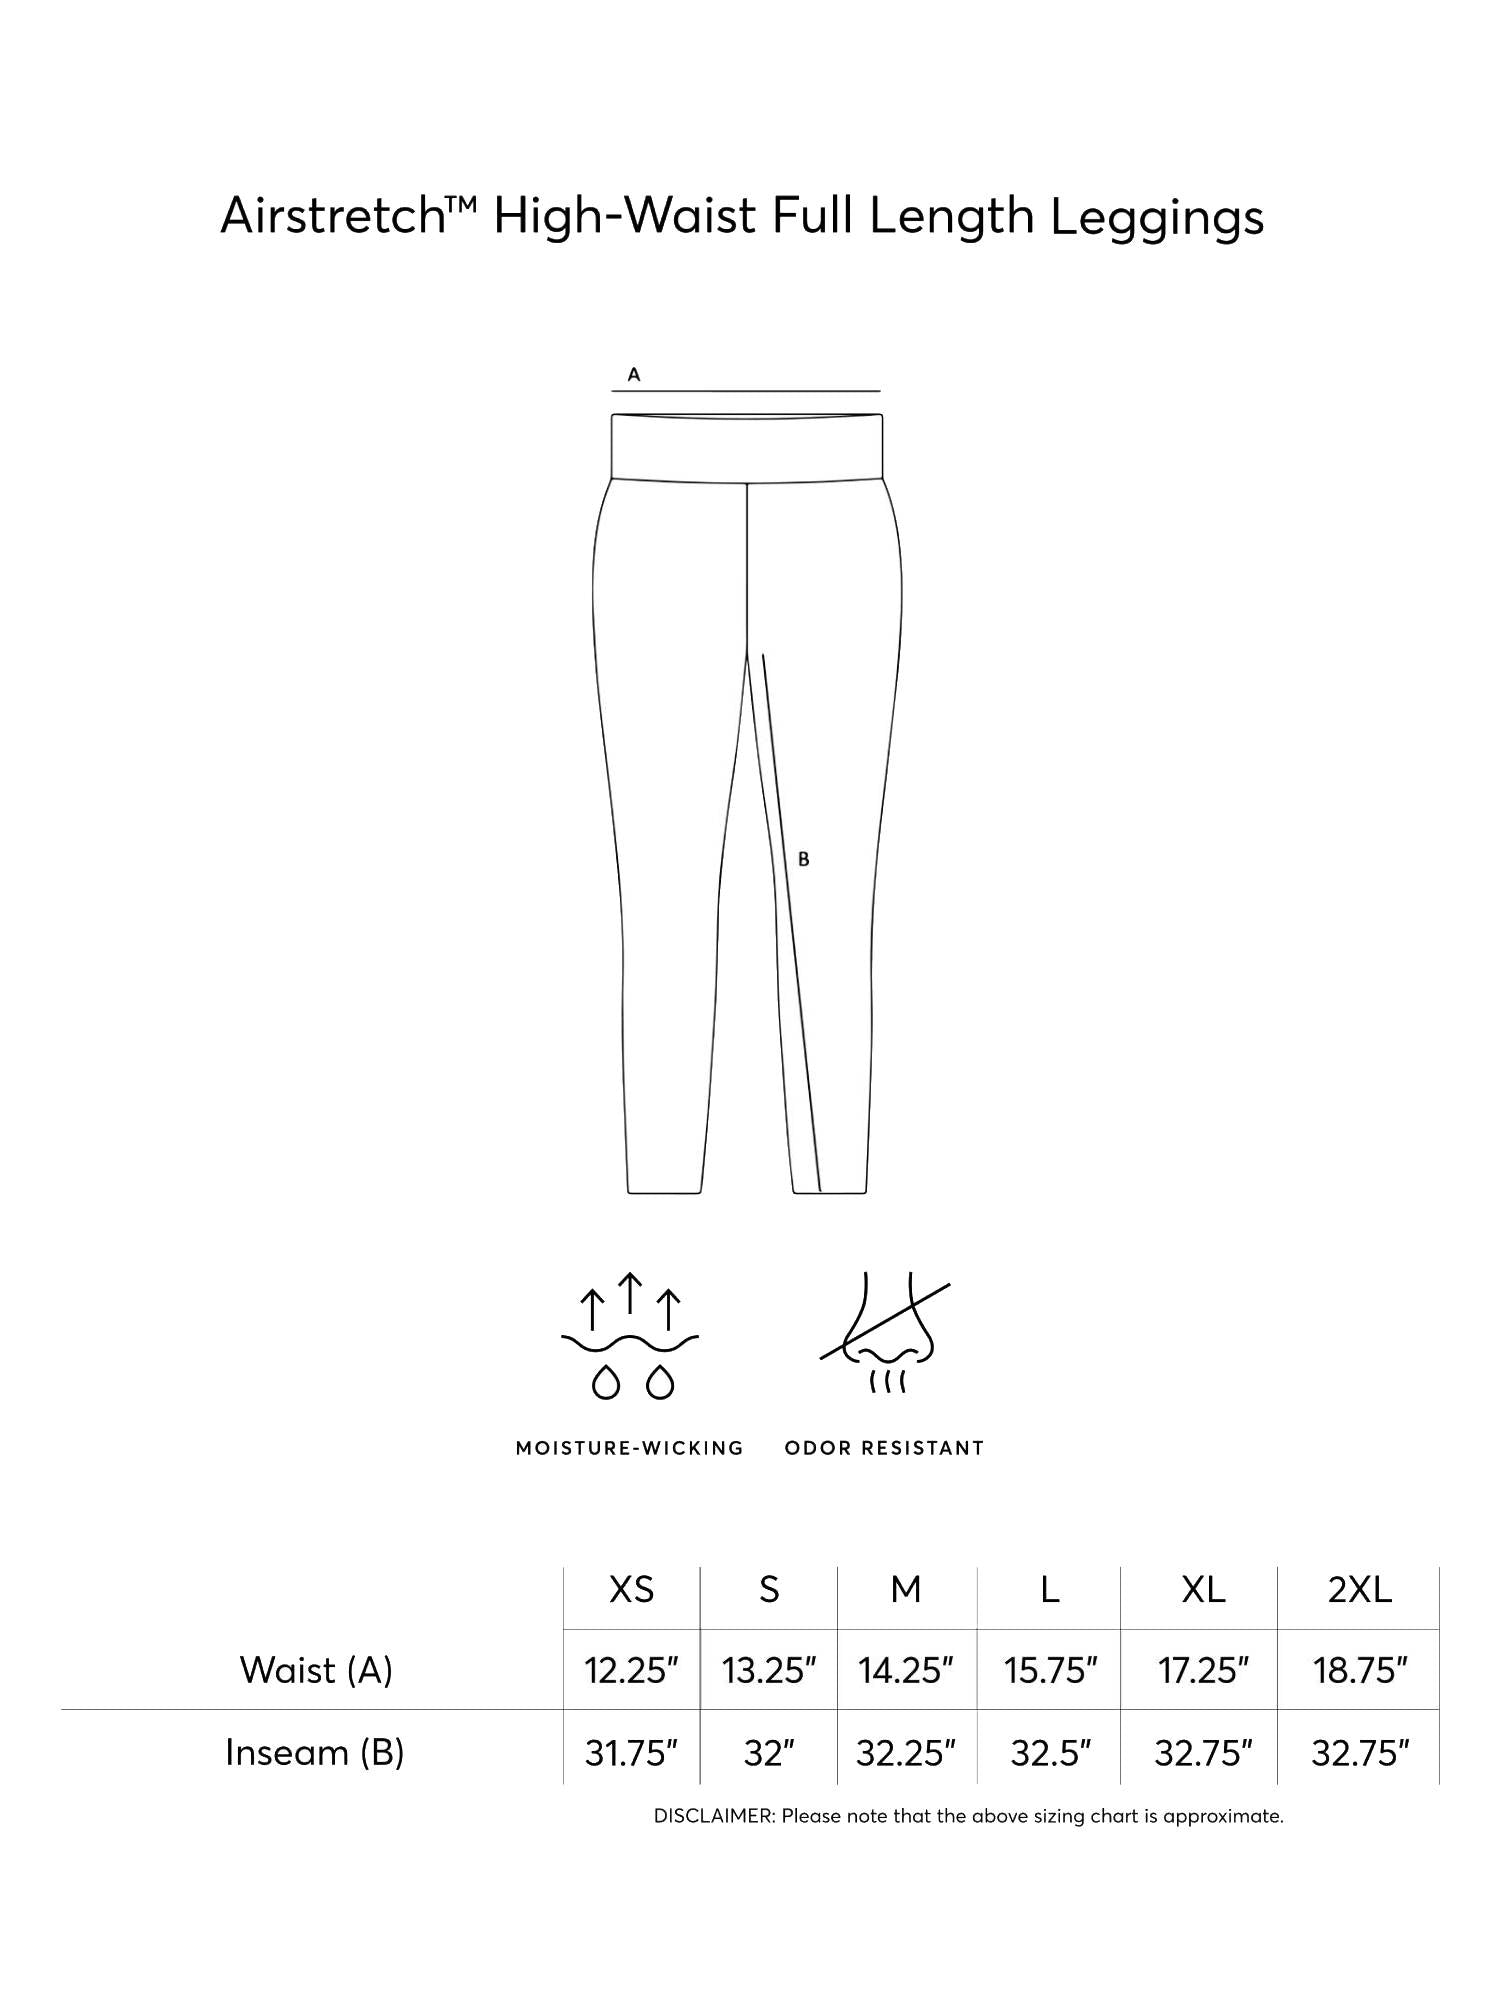 Expert Brand Women's Airstretch High-Waist Full Length Leggings with Pocket - DressbarnLeggings